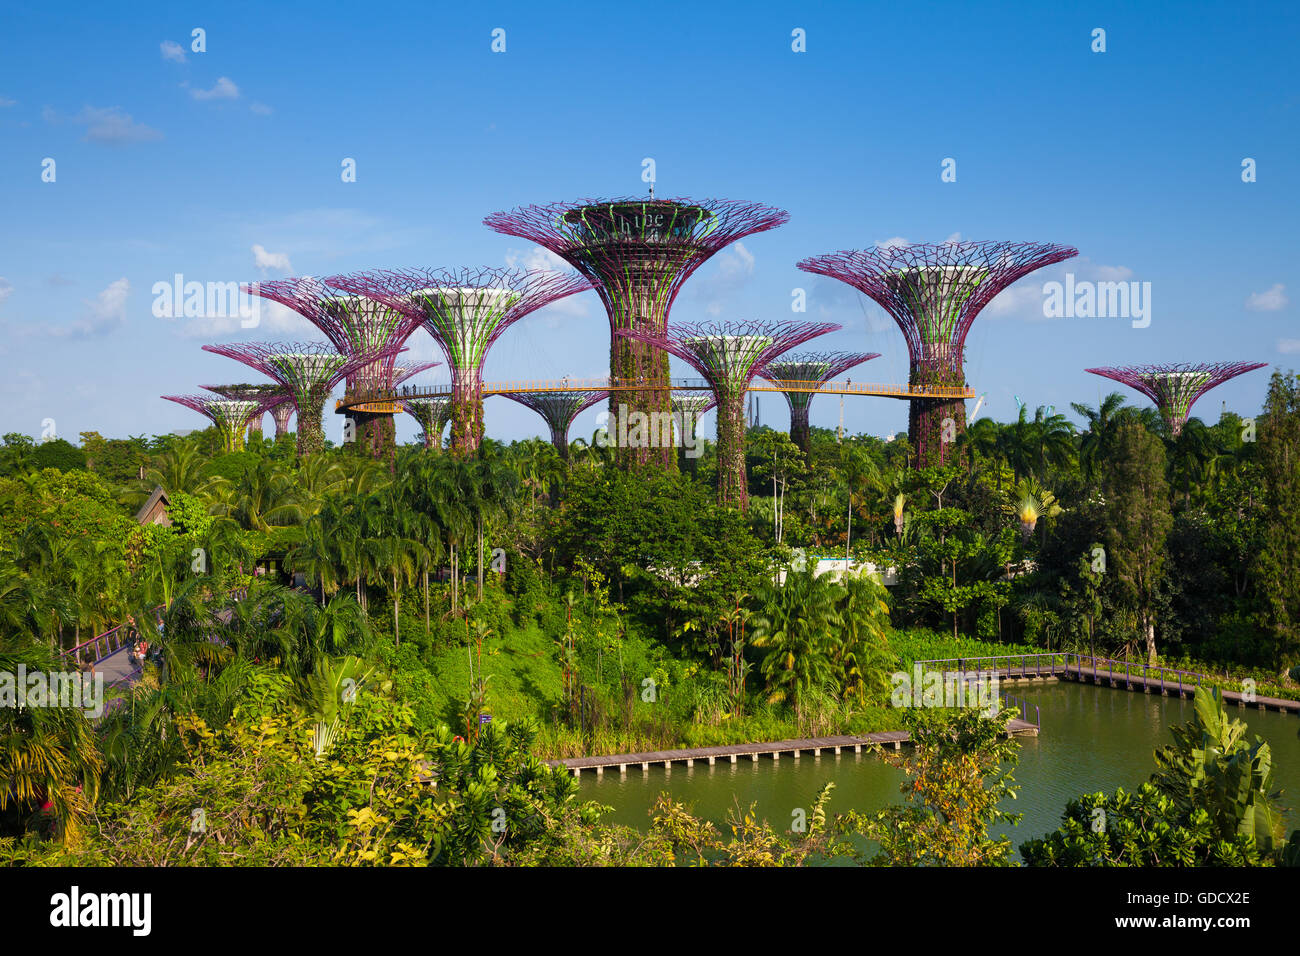 Vue de jour du Supertree grove dans les jardins de La Baie le 17 janvier 2016 à Singapour. Banque D'Images